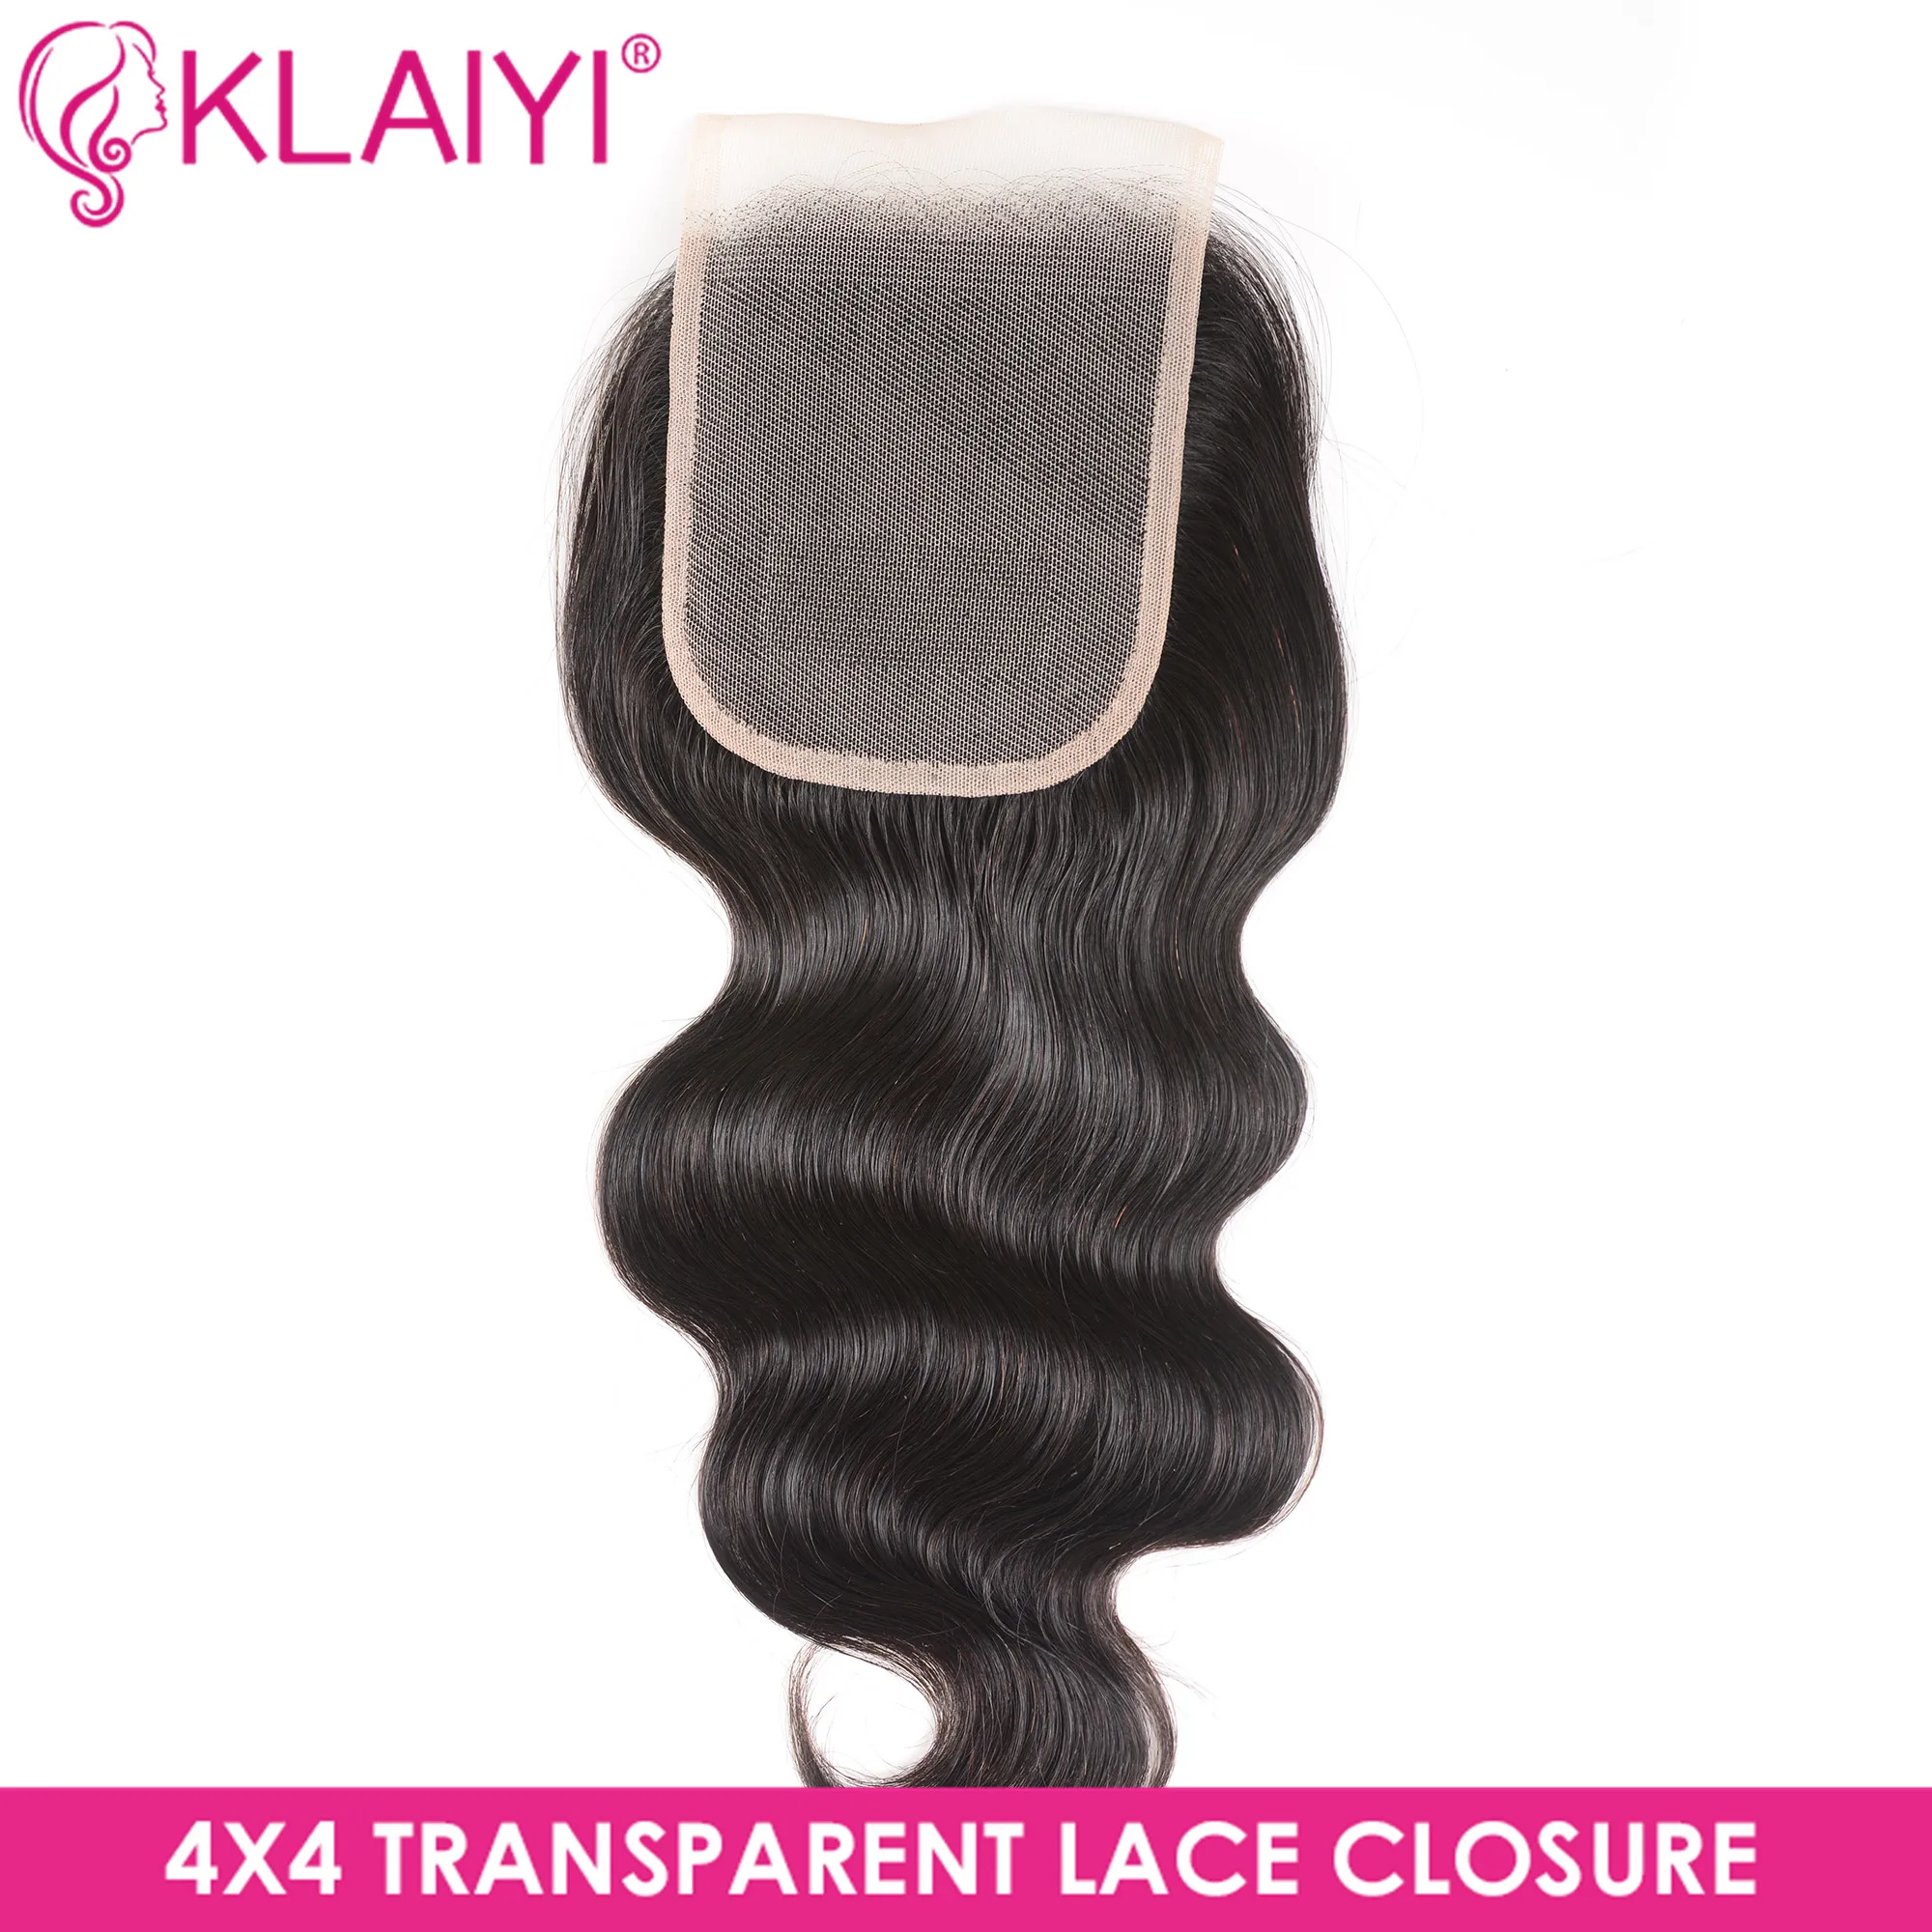 Klaiyi волосы для тела волна прозрачное Закрытие 4*4 прозрачное кружево Закрытие Натуральные Цветные волосы Реми бразильские человеческие